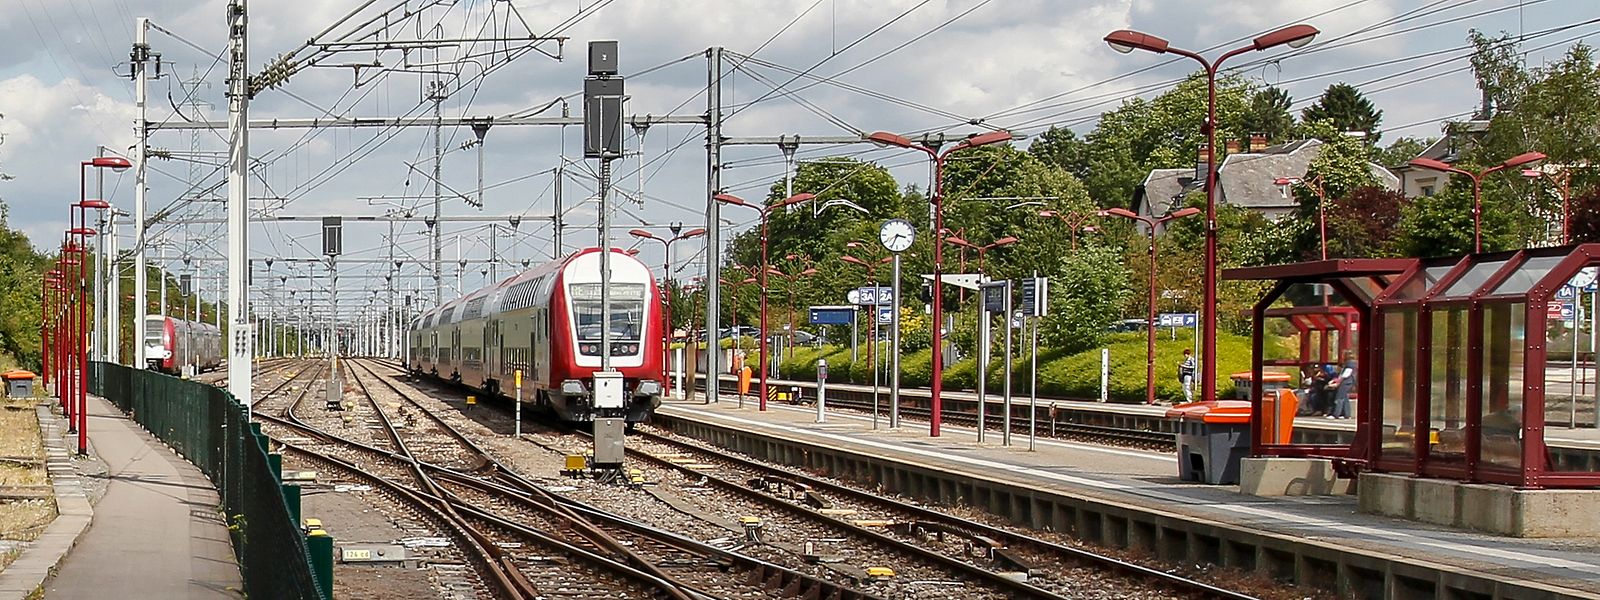 Die Zugverbindung zwischen Rodange und Virton war seit Freitag unterbrochen.